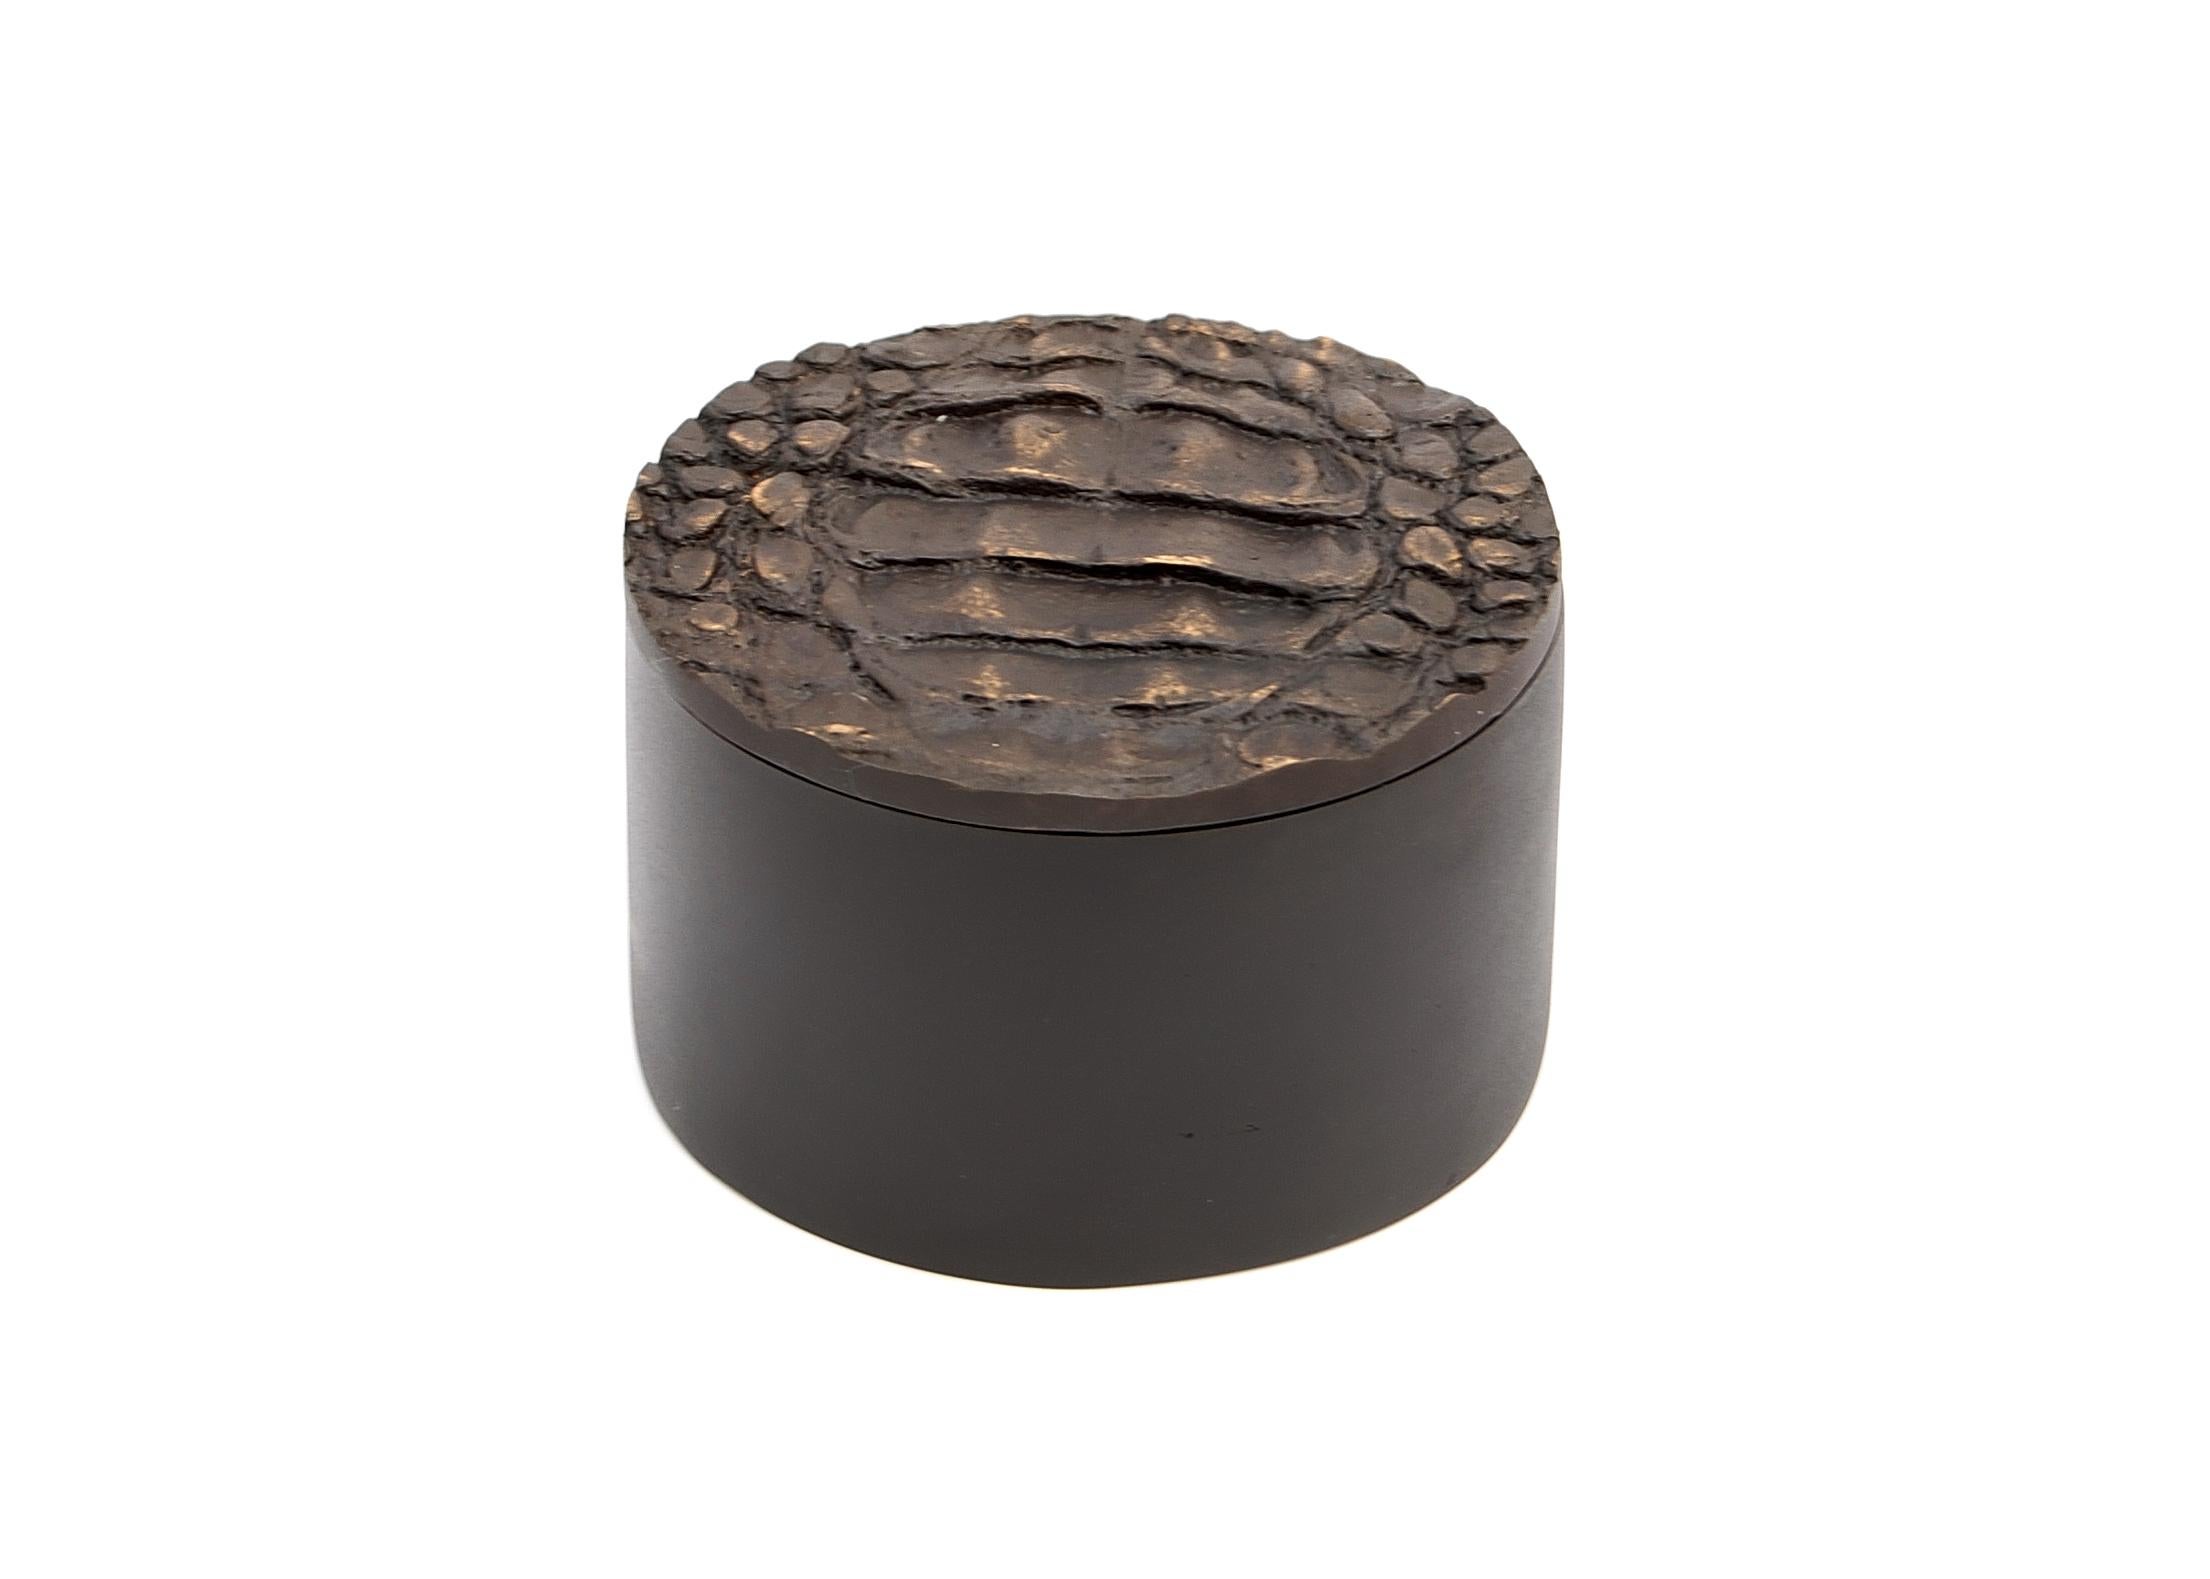 Mark kleine Schachtel von Fakasaka Design
Abmessungen: B 10 cm T 10 cm H 6,5 cm.
MATERIAL: schwarz/braune Bronze.
Auch in polierter Bronze erhältlich. 

 FAKASAKA ist ein Designunternehmen, das sich auf die Herstellung von hochwertigen Möbeln,